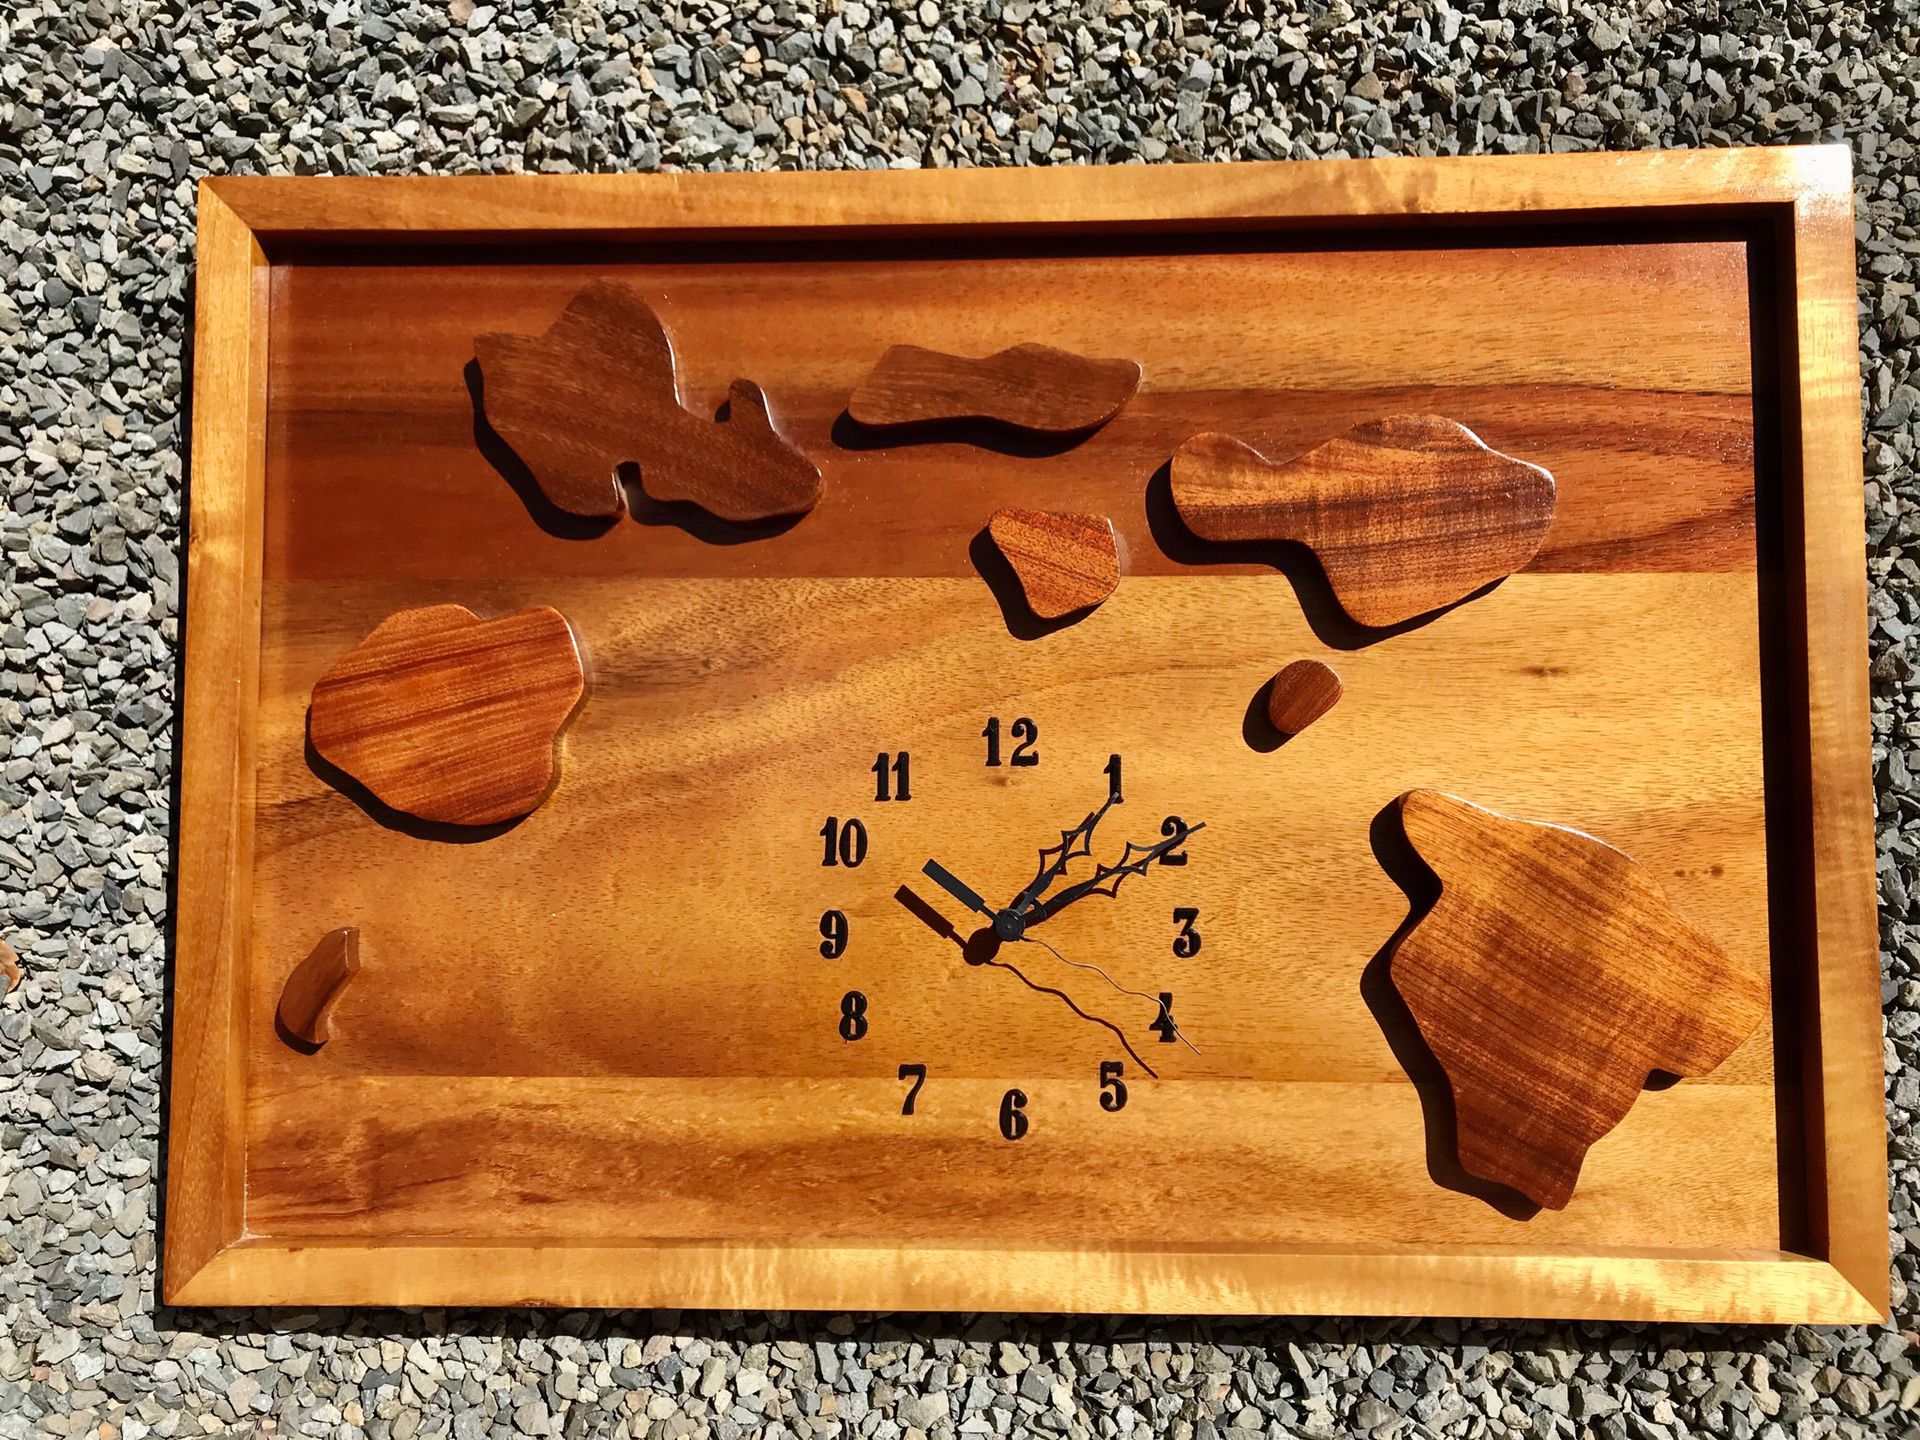 Hawaiian koa wood clock